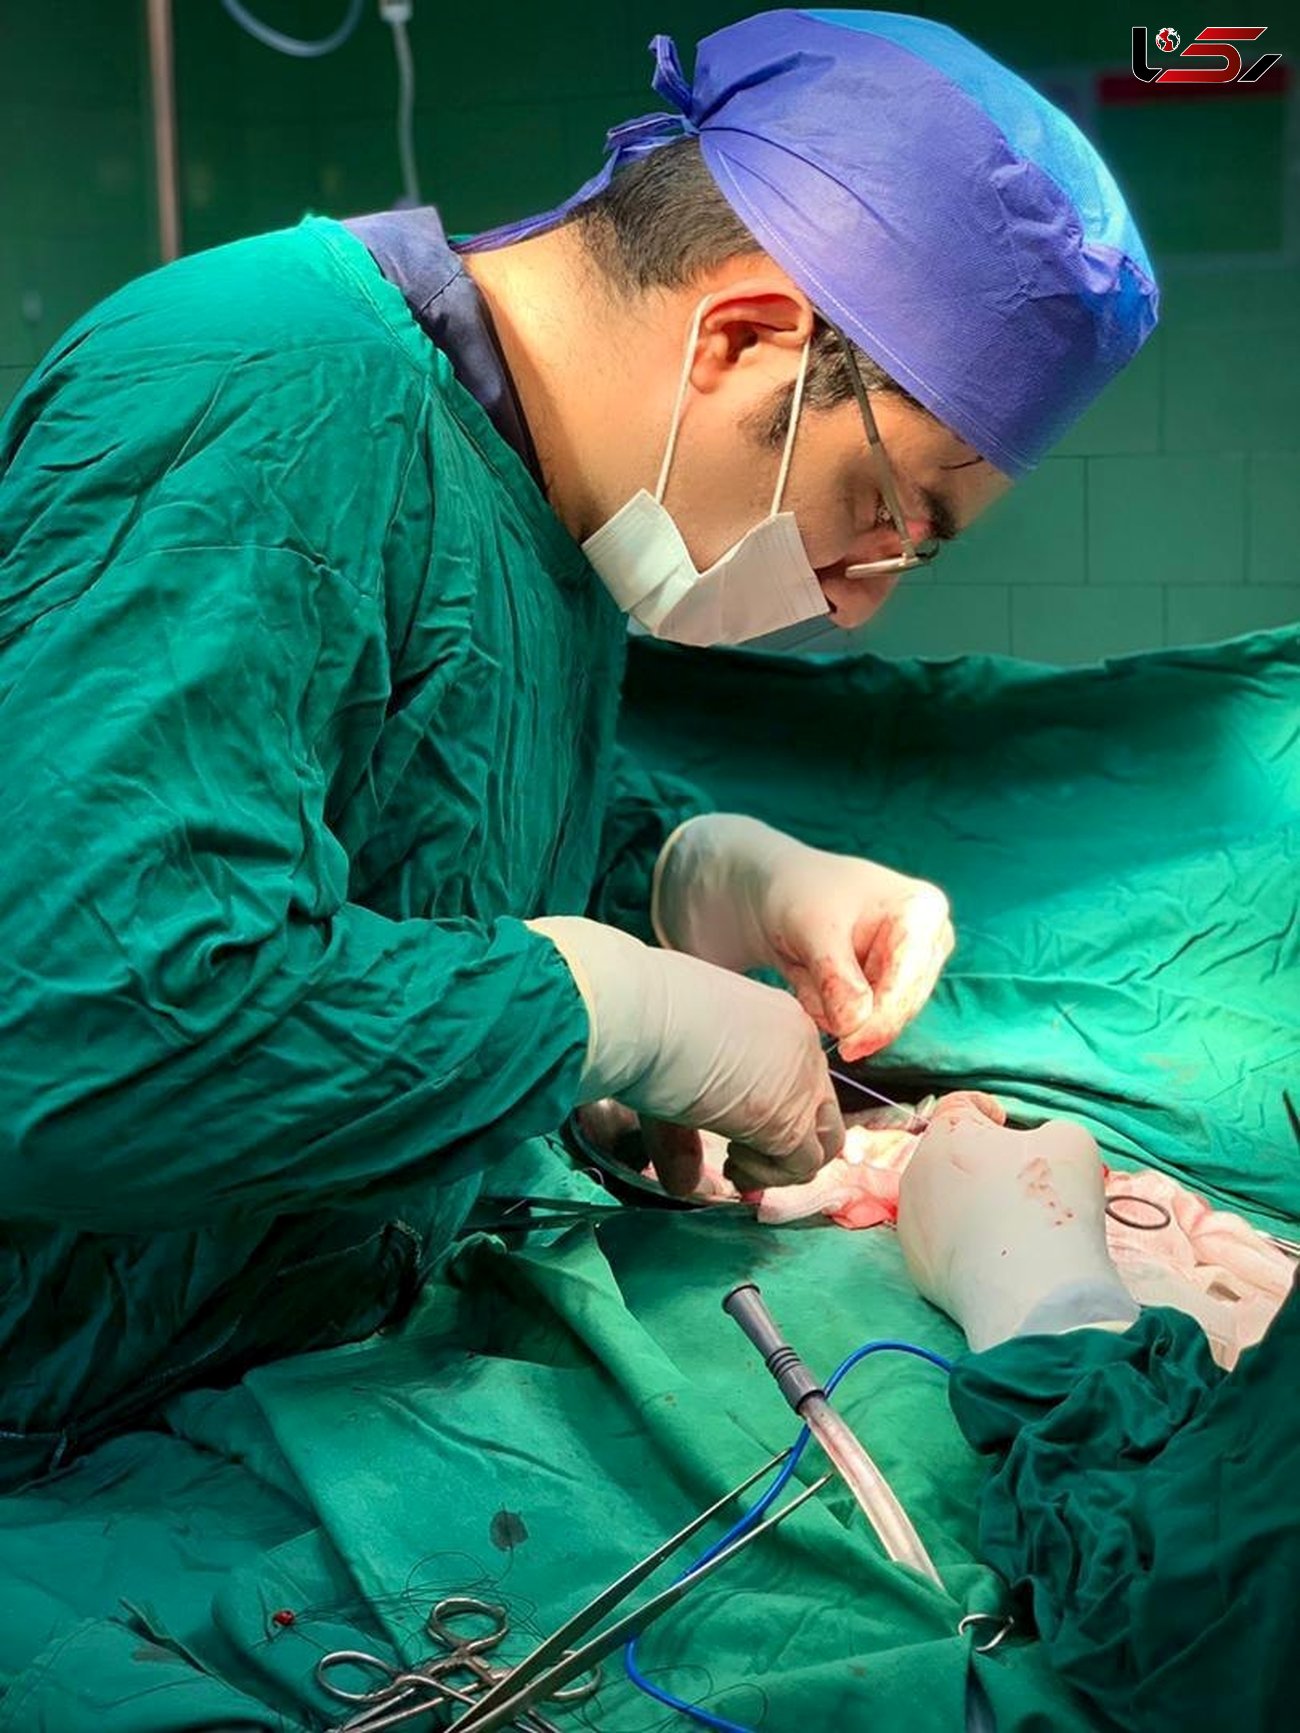 انجام عمل جراحی همی کولکتومی راست (برداشت روده بزرگ) اورژانسی در نوزاد ۵ ماهه در پارس آبادمغان